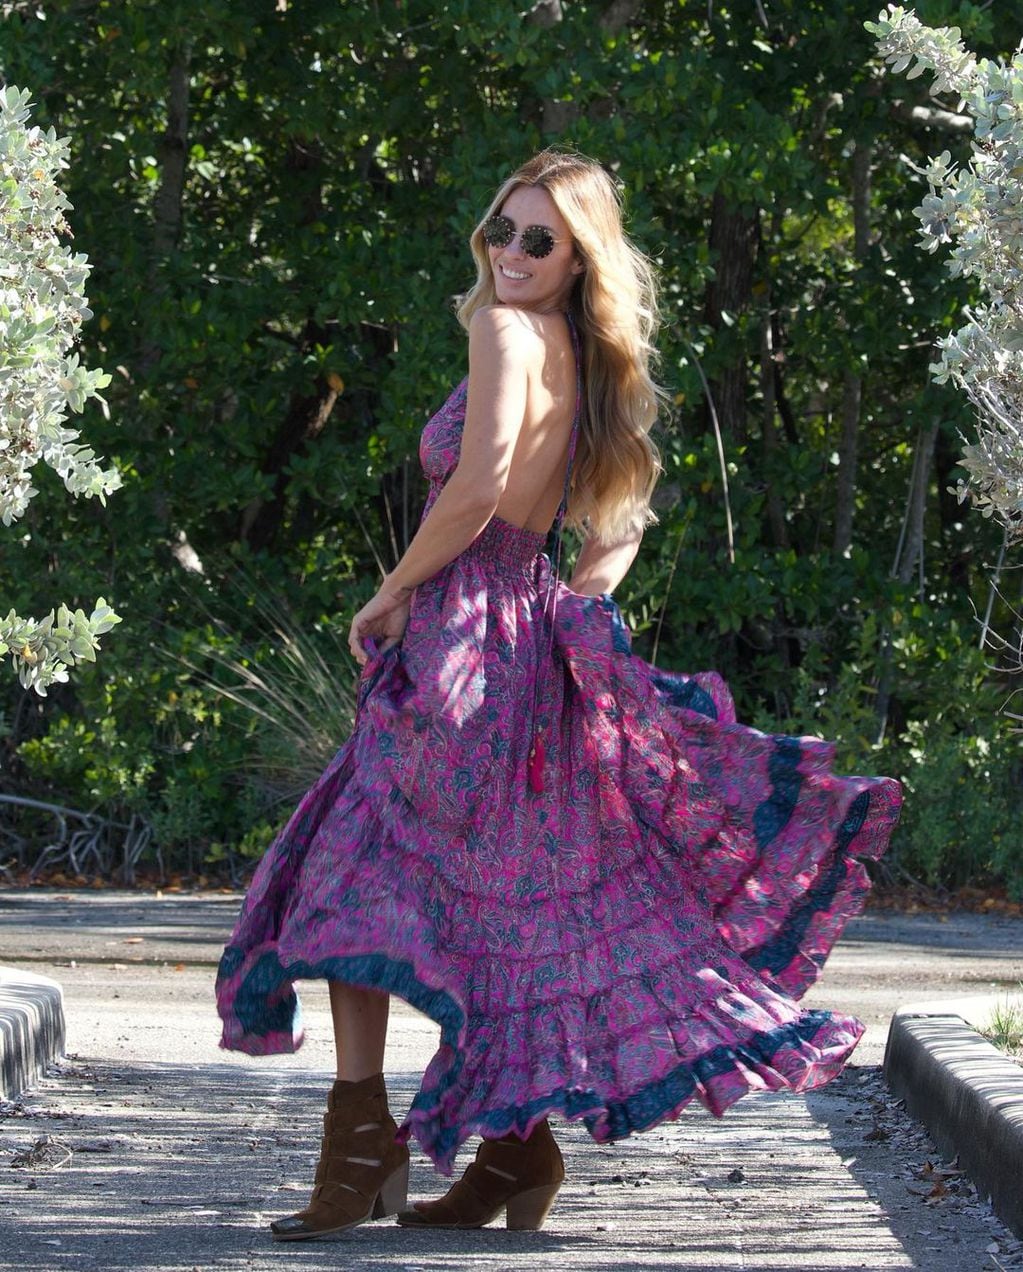 Rocío Guirao Díaz sorprendió con un look hippie chic